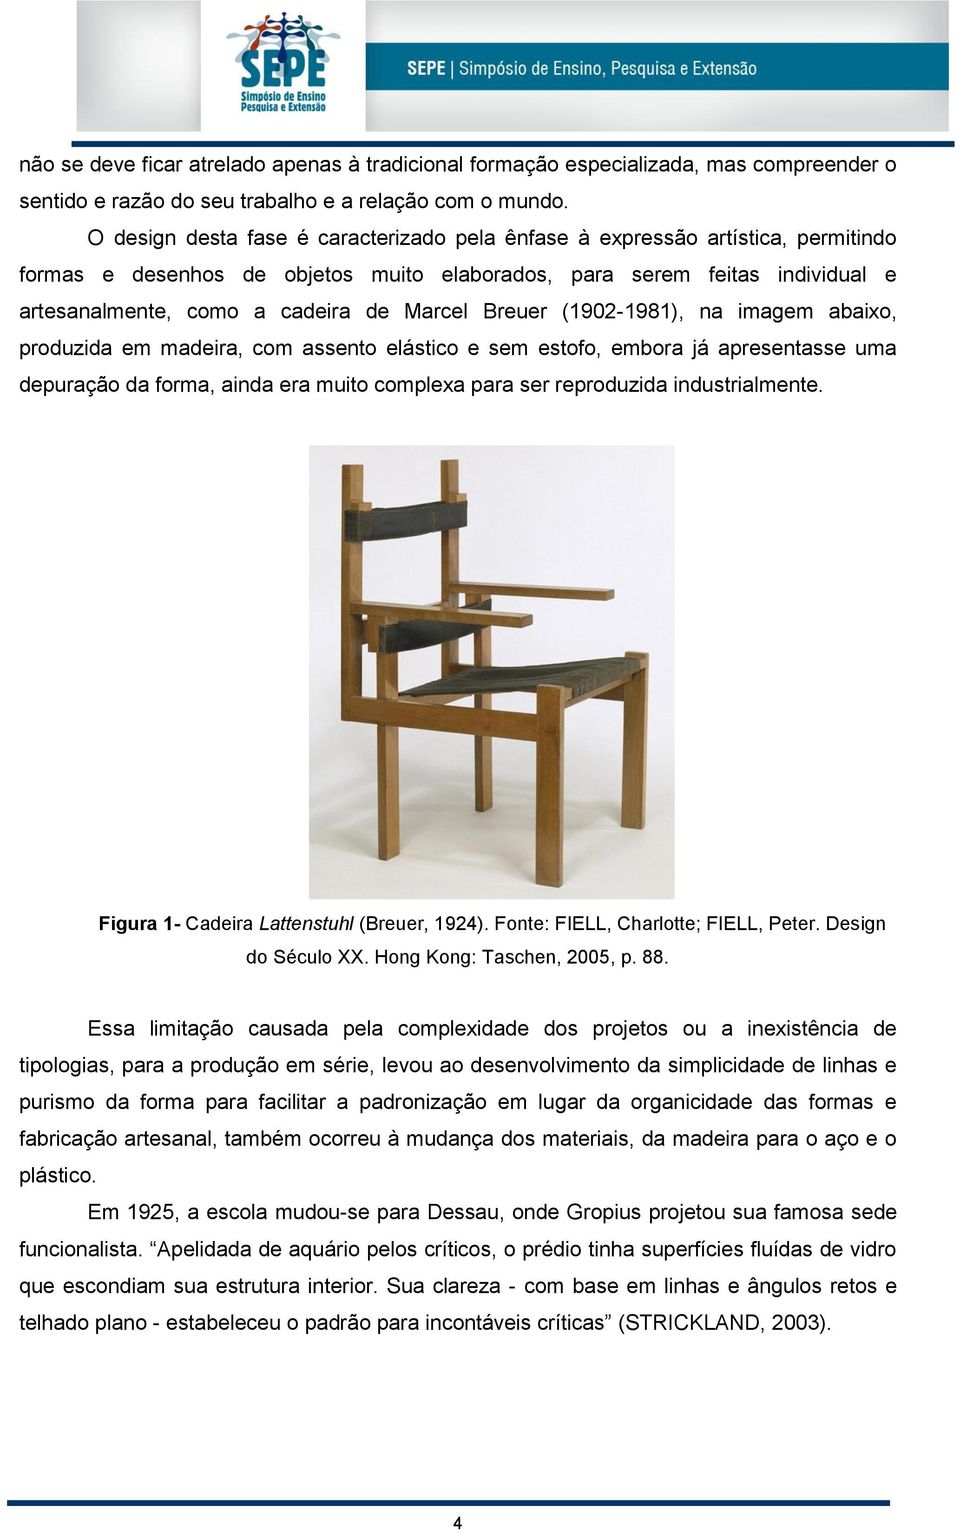 Marcel Breuer (1902-1981), na imagem abaixo, produzida em madeira, com assento elástico e sem estofo, embora já apresentasse uma depuração da forma, ainda era muito complexa para ser reproduzida